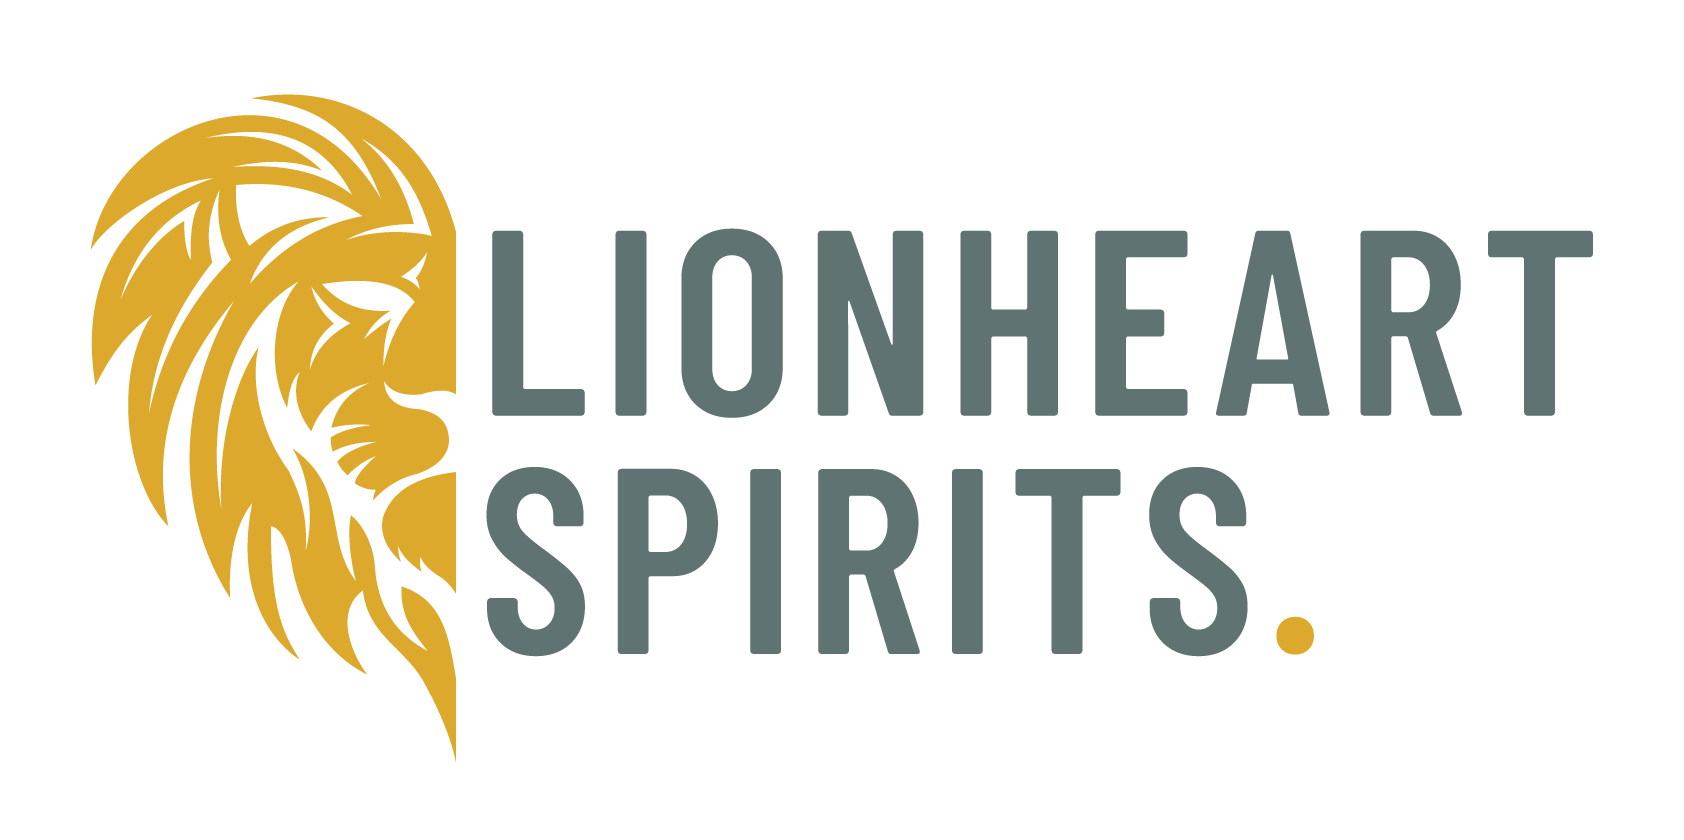 Lionheart gin - Der Gewinner unter allen Produkten